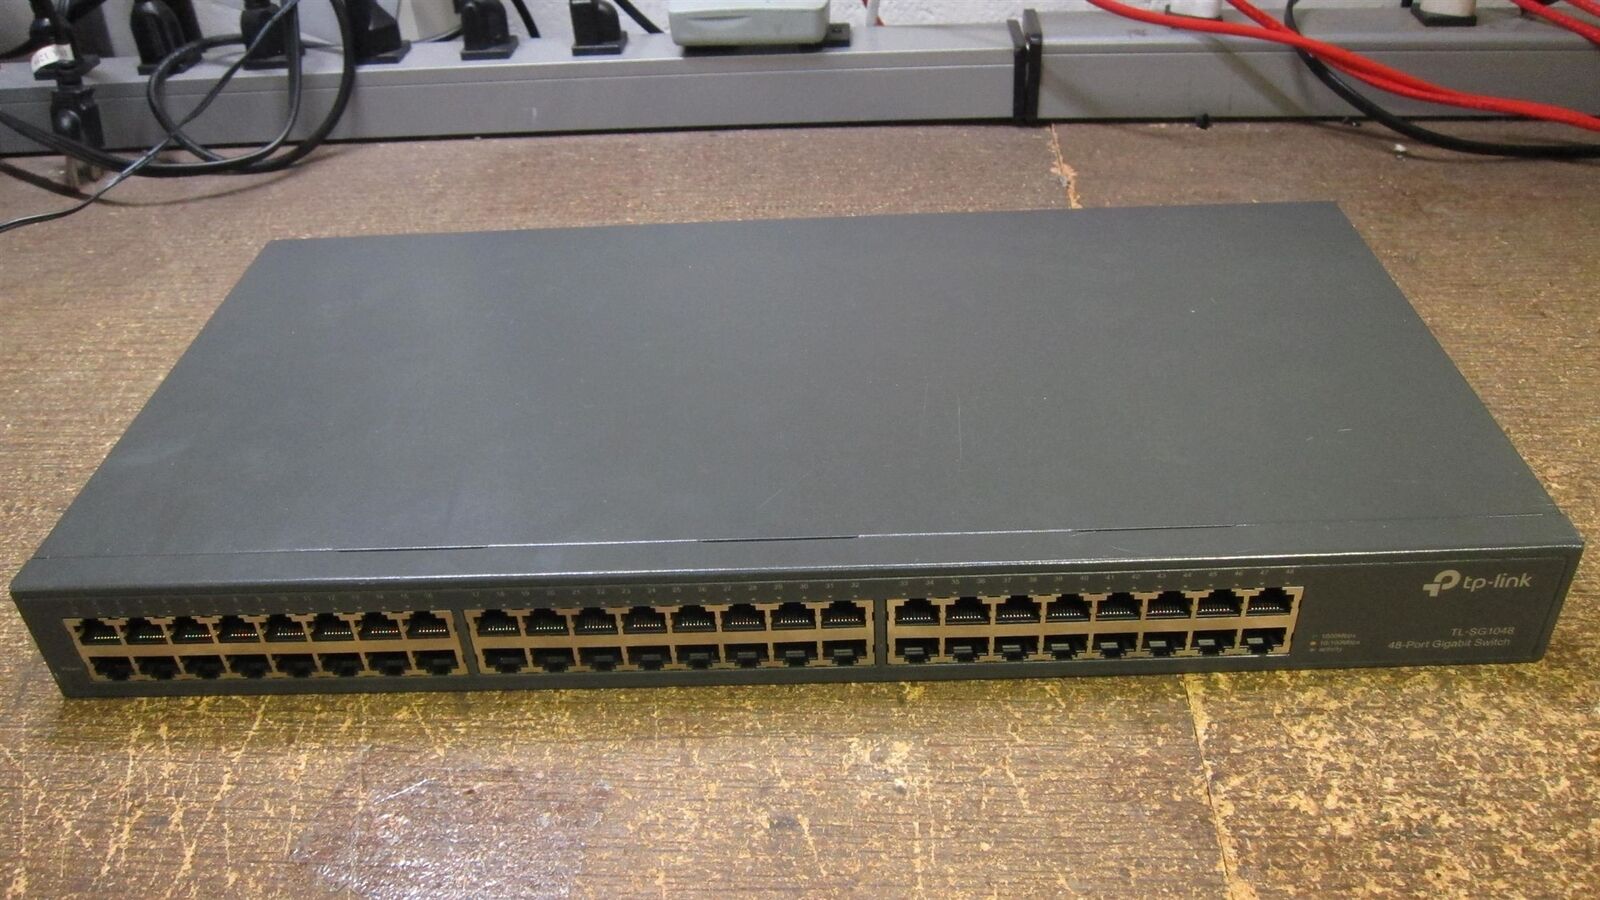 TP-Link TL-SG1048 48-Port Gigabit Ethernet Switch